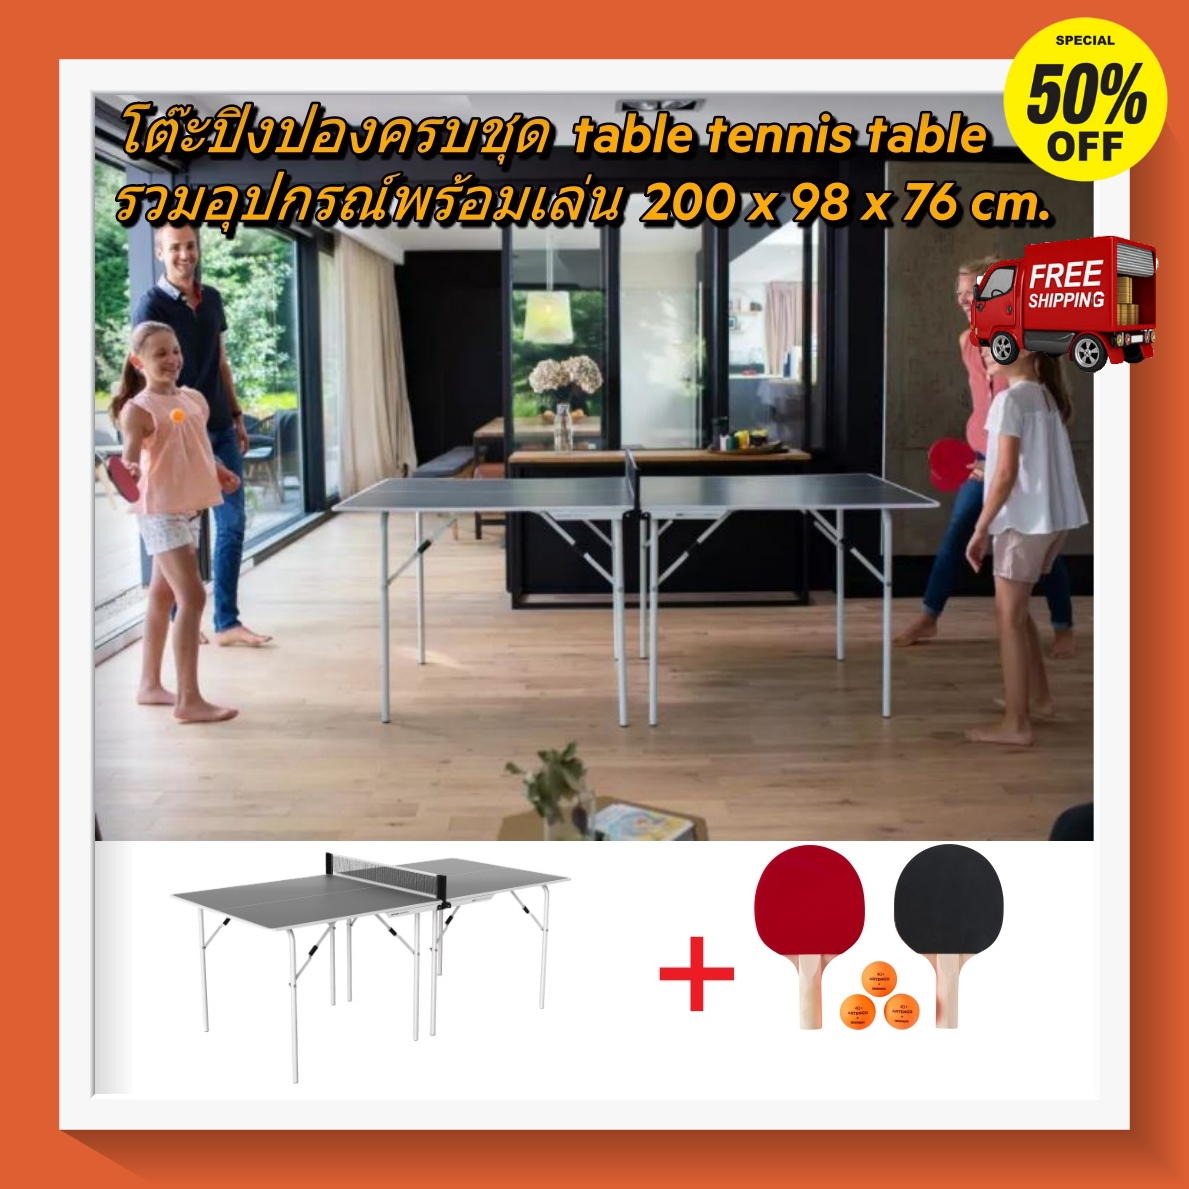 [ส่งฟรี ]โต๊ะปิงปองครบชุดขนาดกลาง พับได้ ปิงปองฝึกสมาธิ 200x 98x76 ซม. ในร่มรุ่น PPT 100  Medium Free Table Tennis Table PPT 100 Medium Indoor ไม้ปิงปอง โต๊ะปิงปอง เน็ตปิงปอง ลูกปิงปอง ออกกำลังกาย โปรโมชั่นสุดคุ้ม